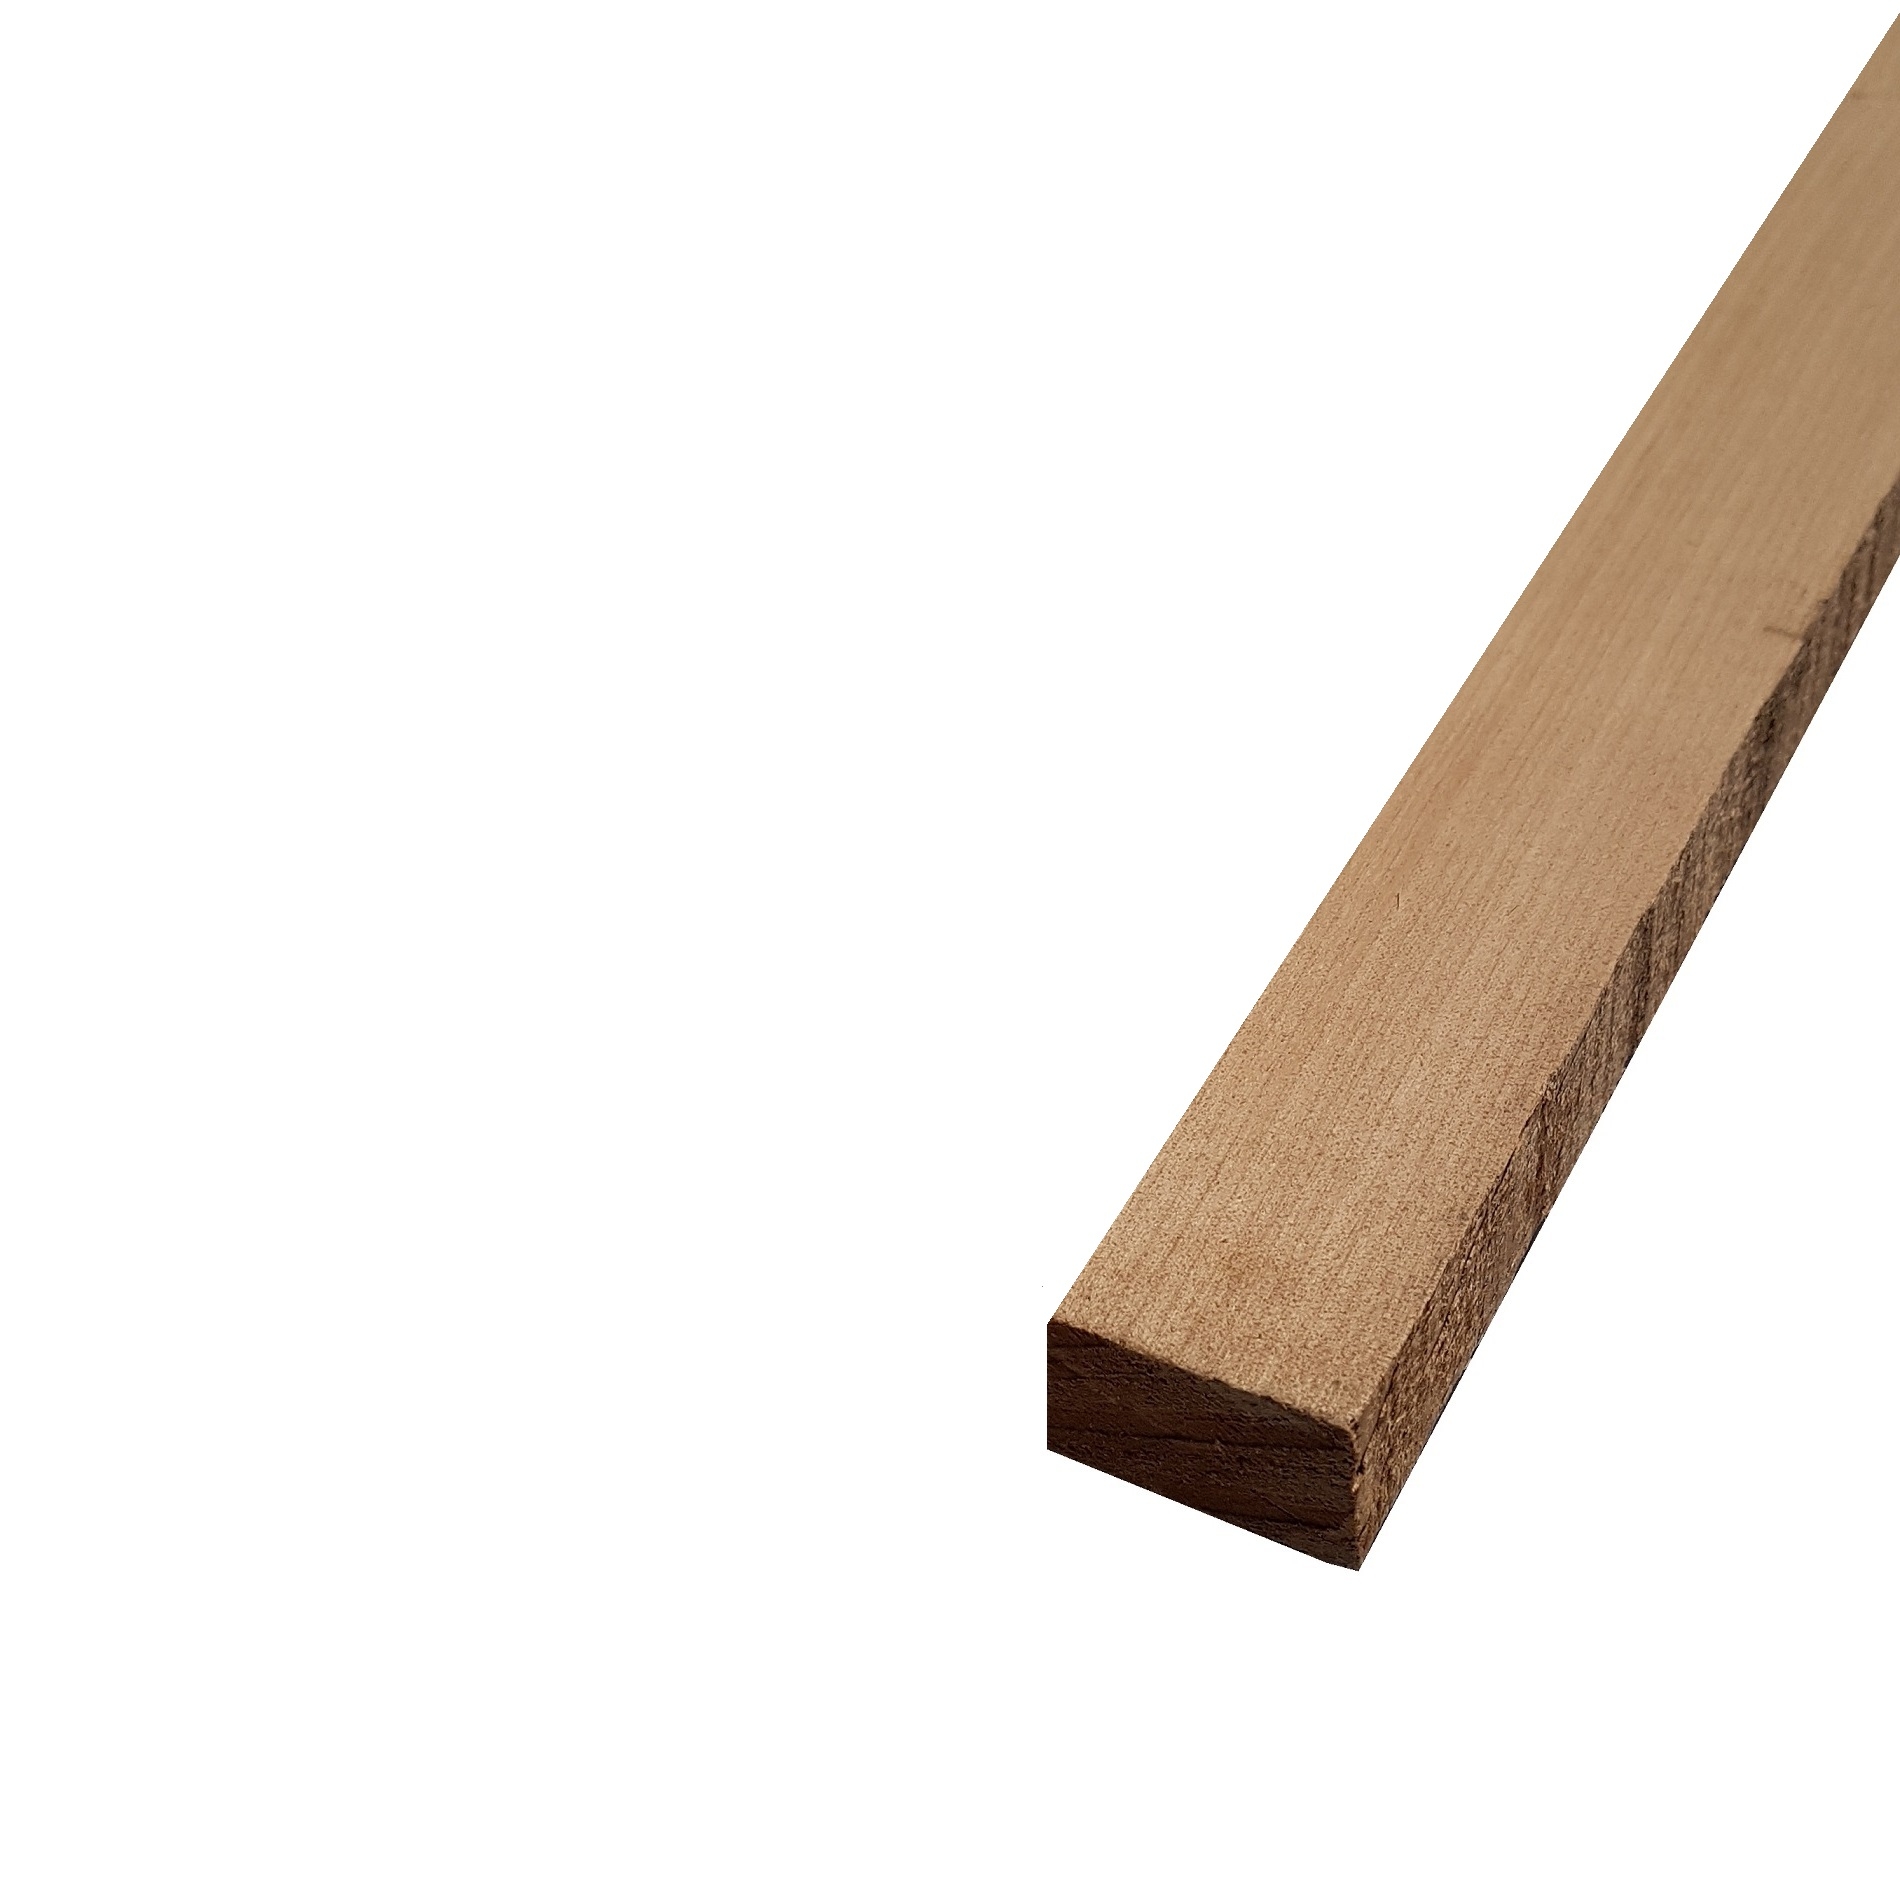 Listello legno di Acero Pacific Coast Maple Calibrato grezzo mm 38 x Varie Misure x 2450